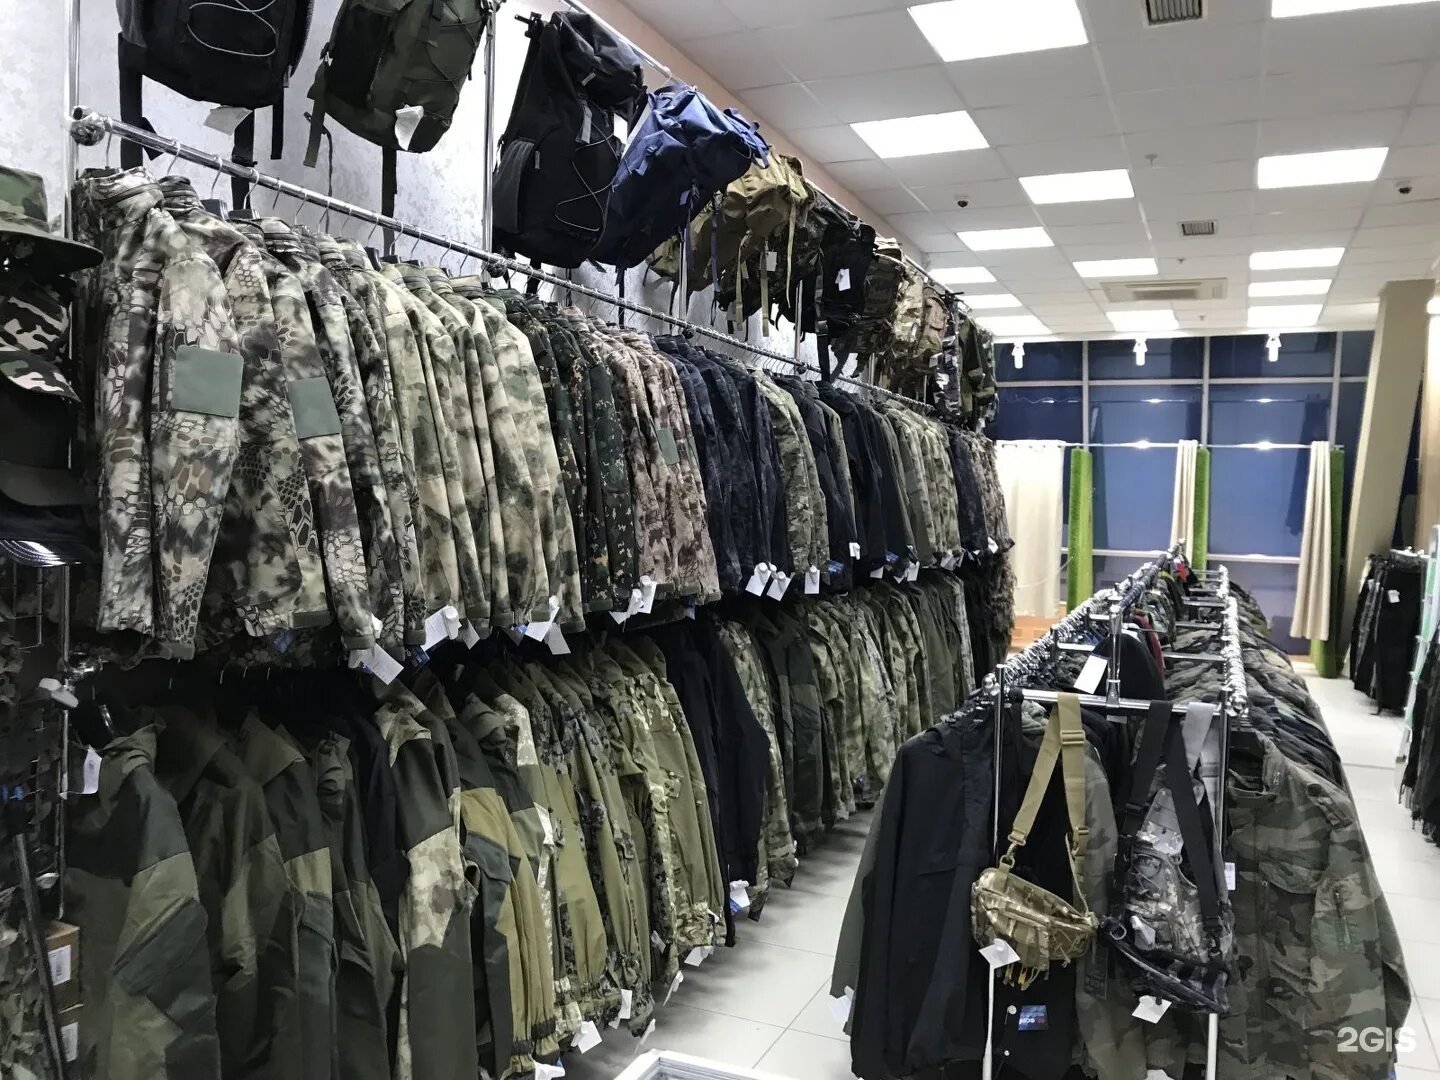 Магазин форма НАТО В СПБ на Нарвской. Милитари стайл магазин в СПБ. Магазин военной одежды НАТО. Форма милитари магазин.